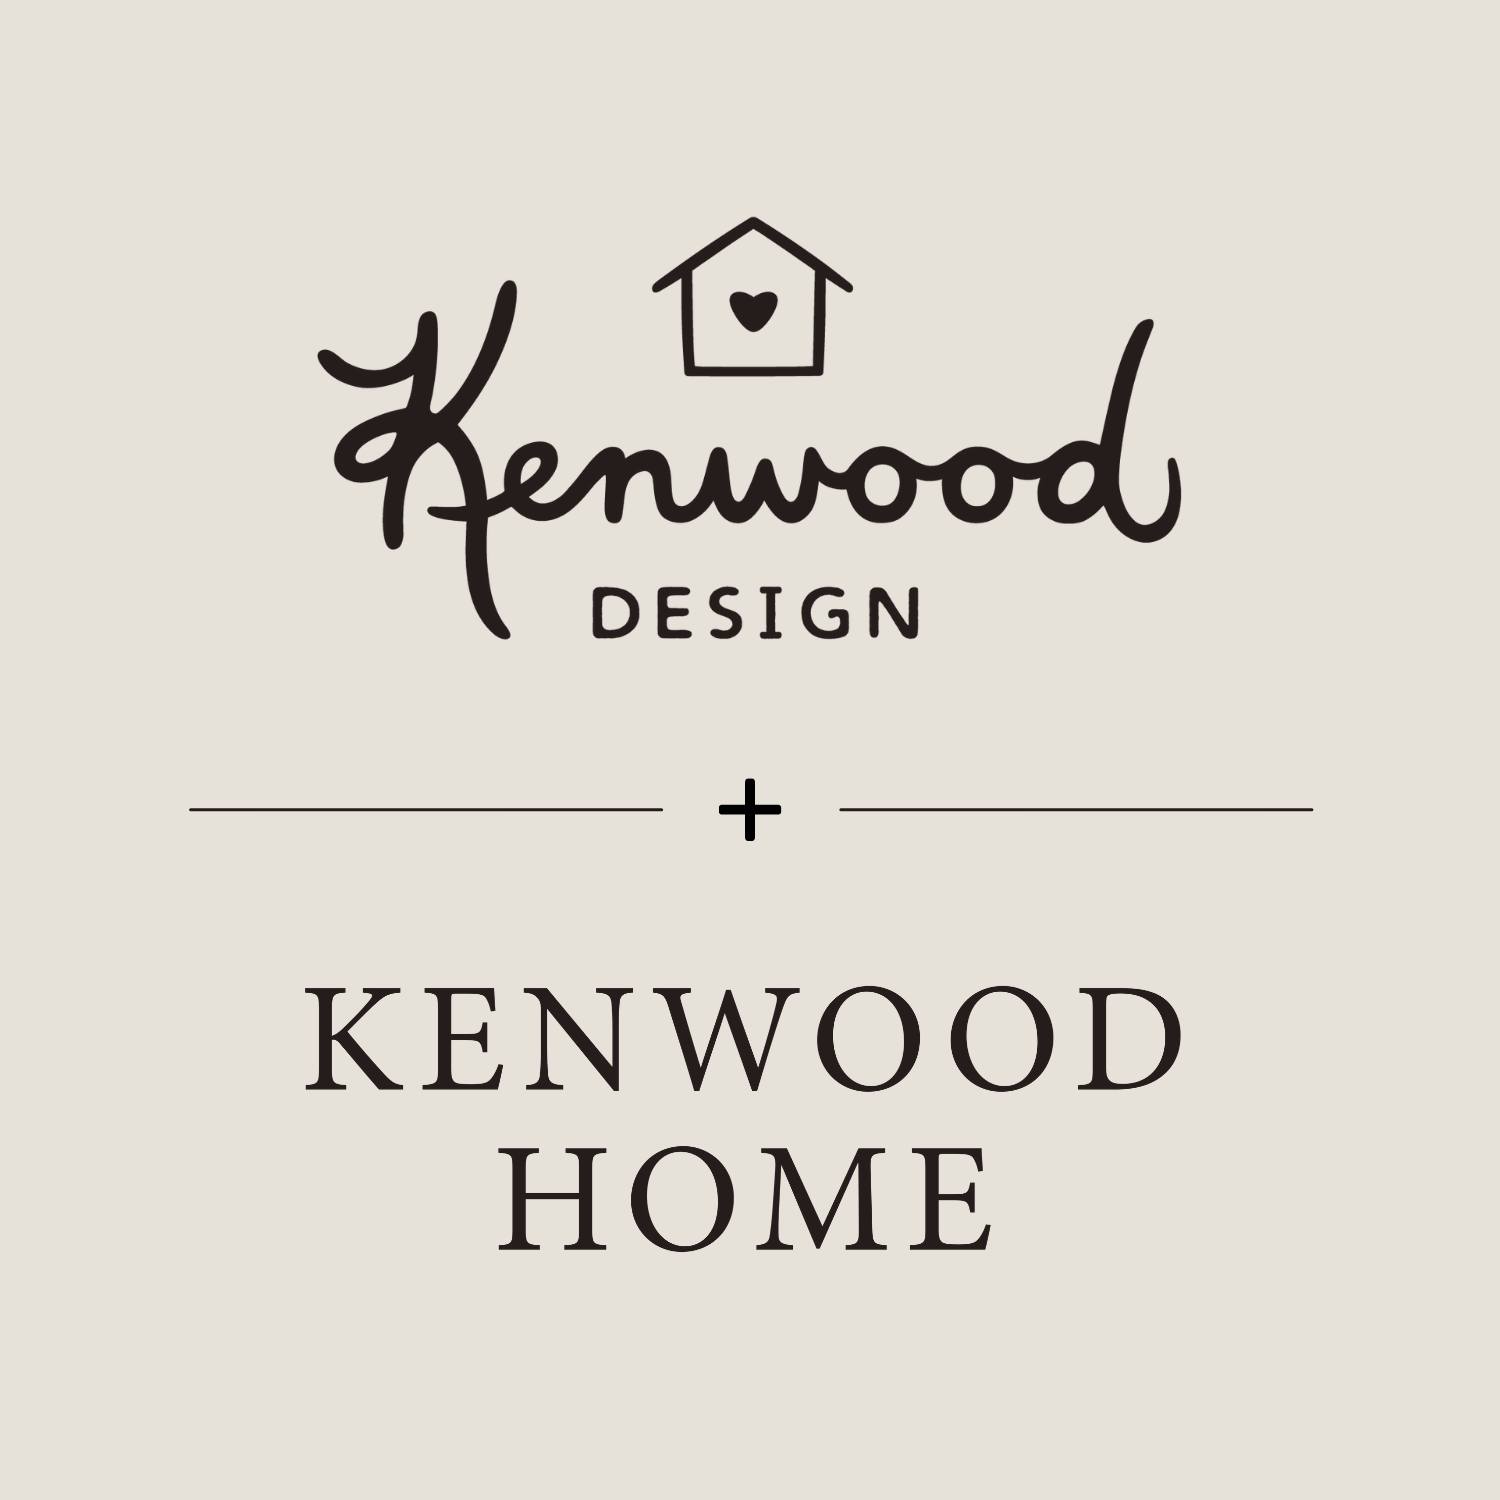 Kenwood Home and Design Slide Image